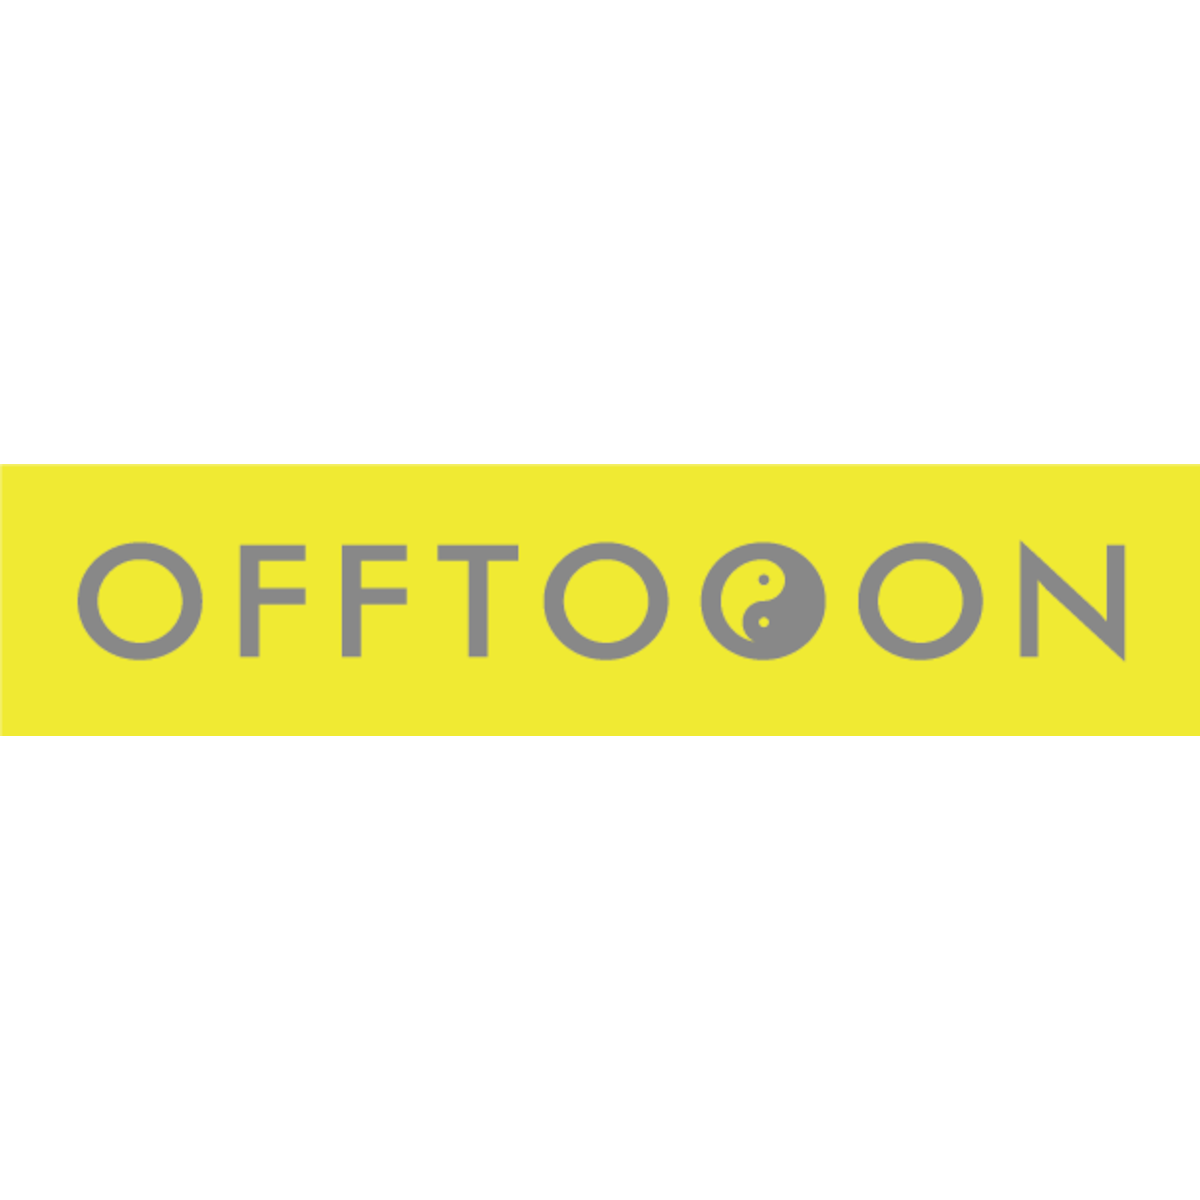 offtooon